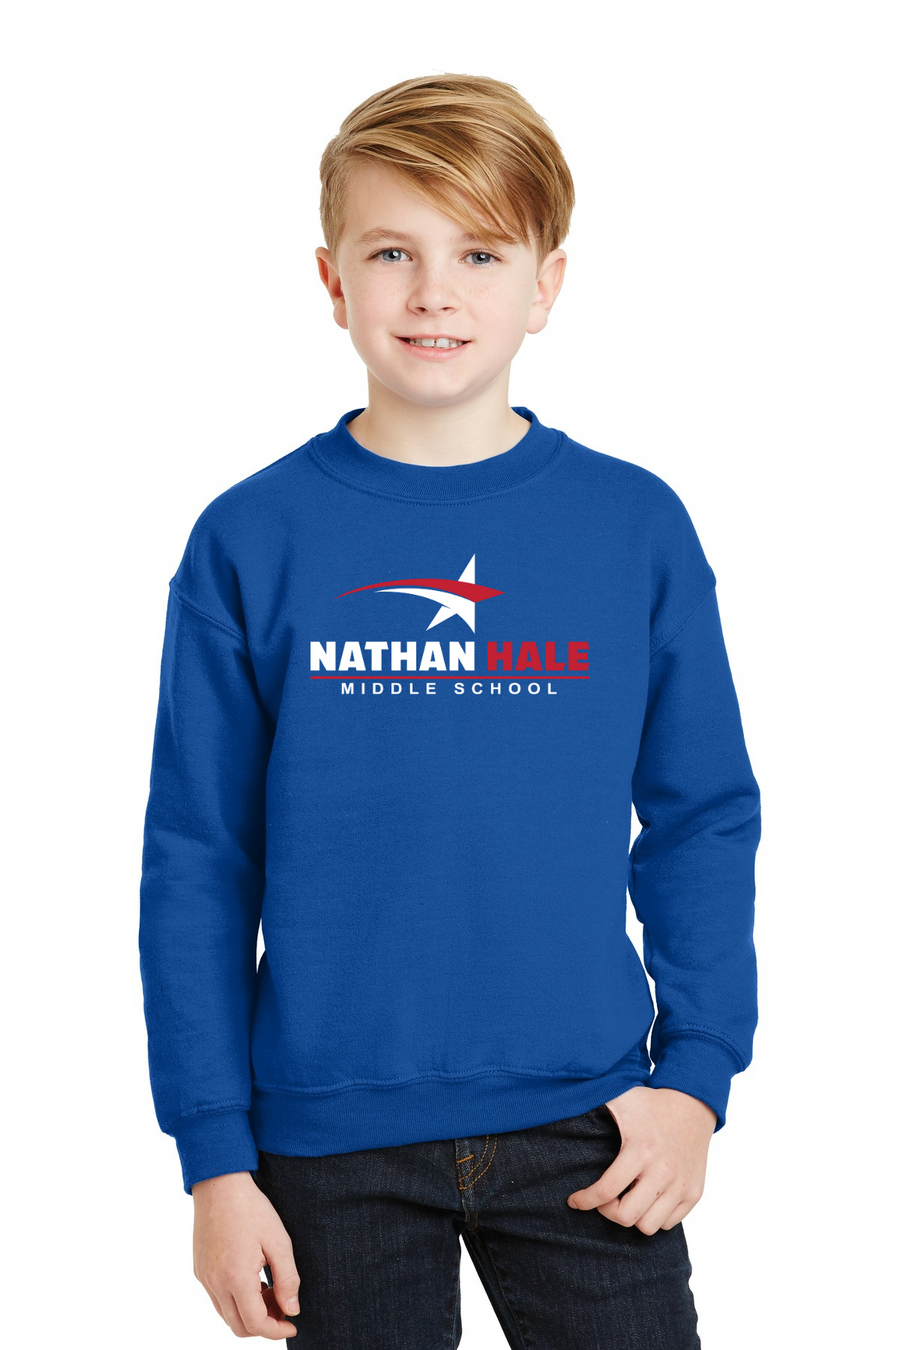 Nathan Hale MS Spirit Wear 2023-24-Unisex Crewneck Sweatshirt White & Red Star Logo